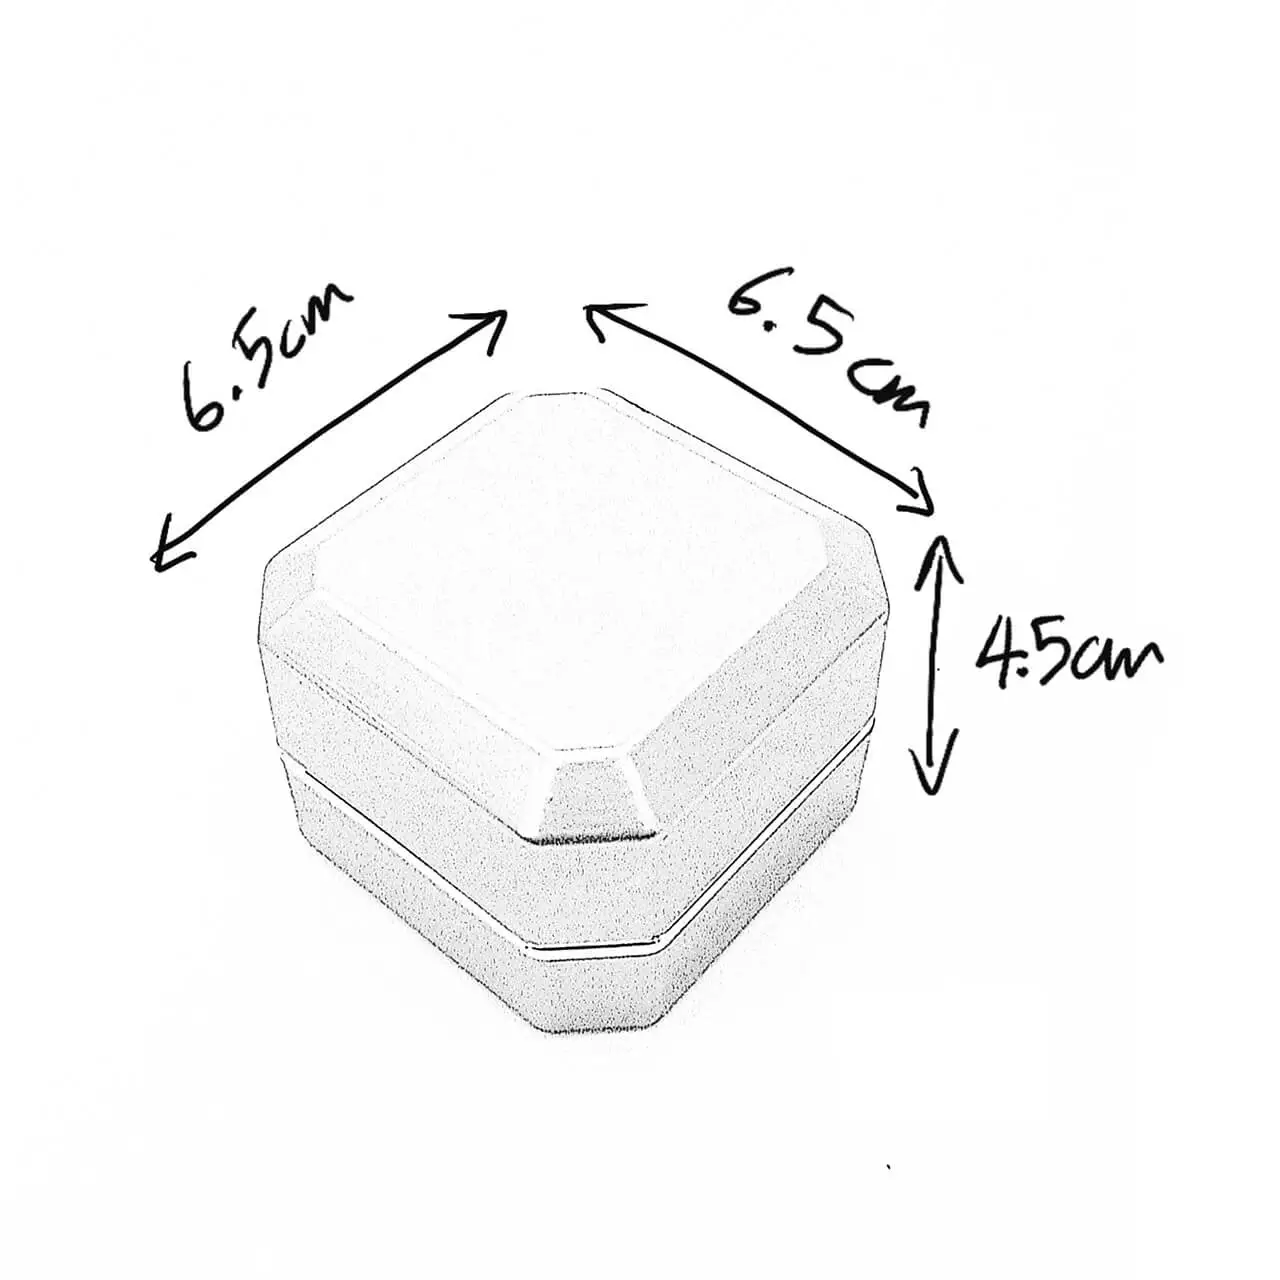 asscher ring box dimensions